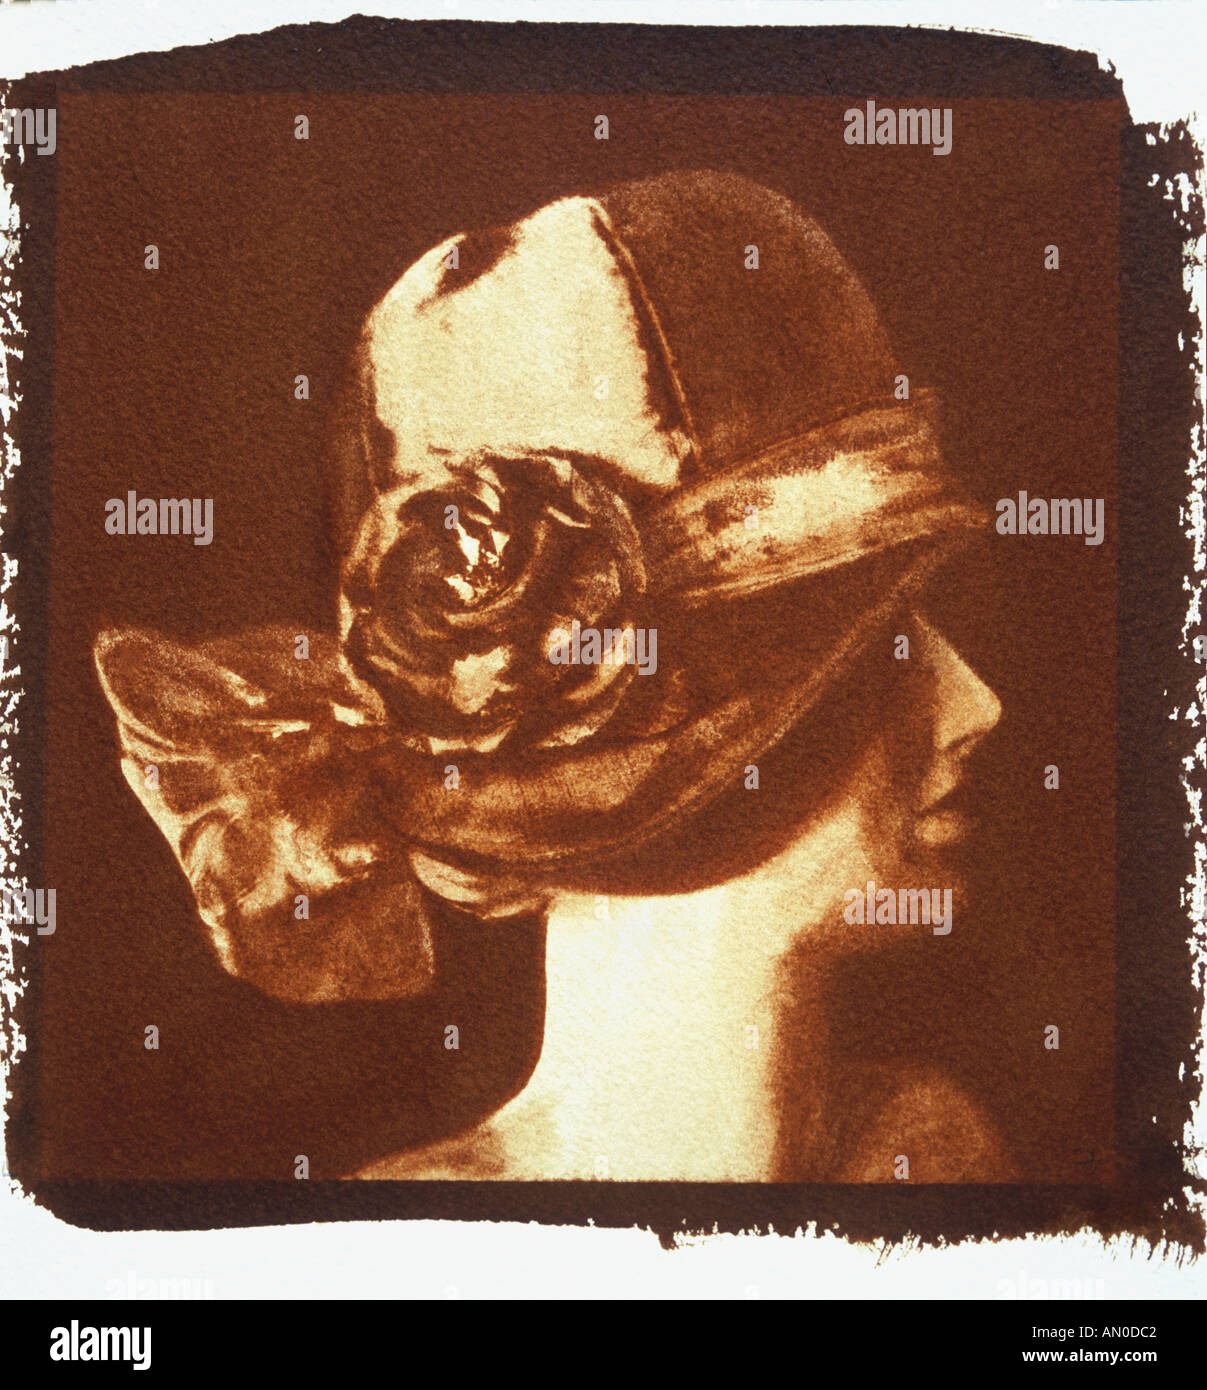 Ein Bild einer 1920er Jahre Büste mit Cloche Hut mit der traditionellen Gum Bichromate Technik gedruckt. Alternativen Verfahren. Stockfoto